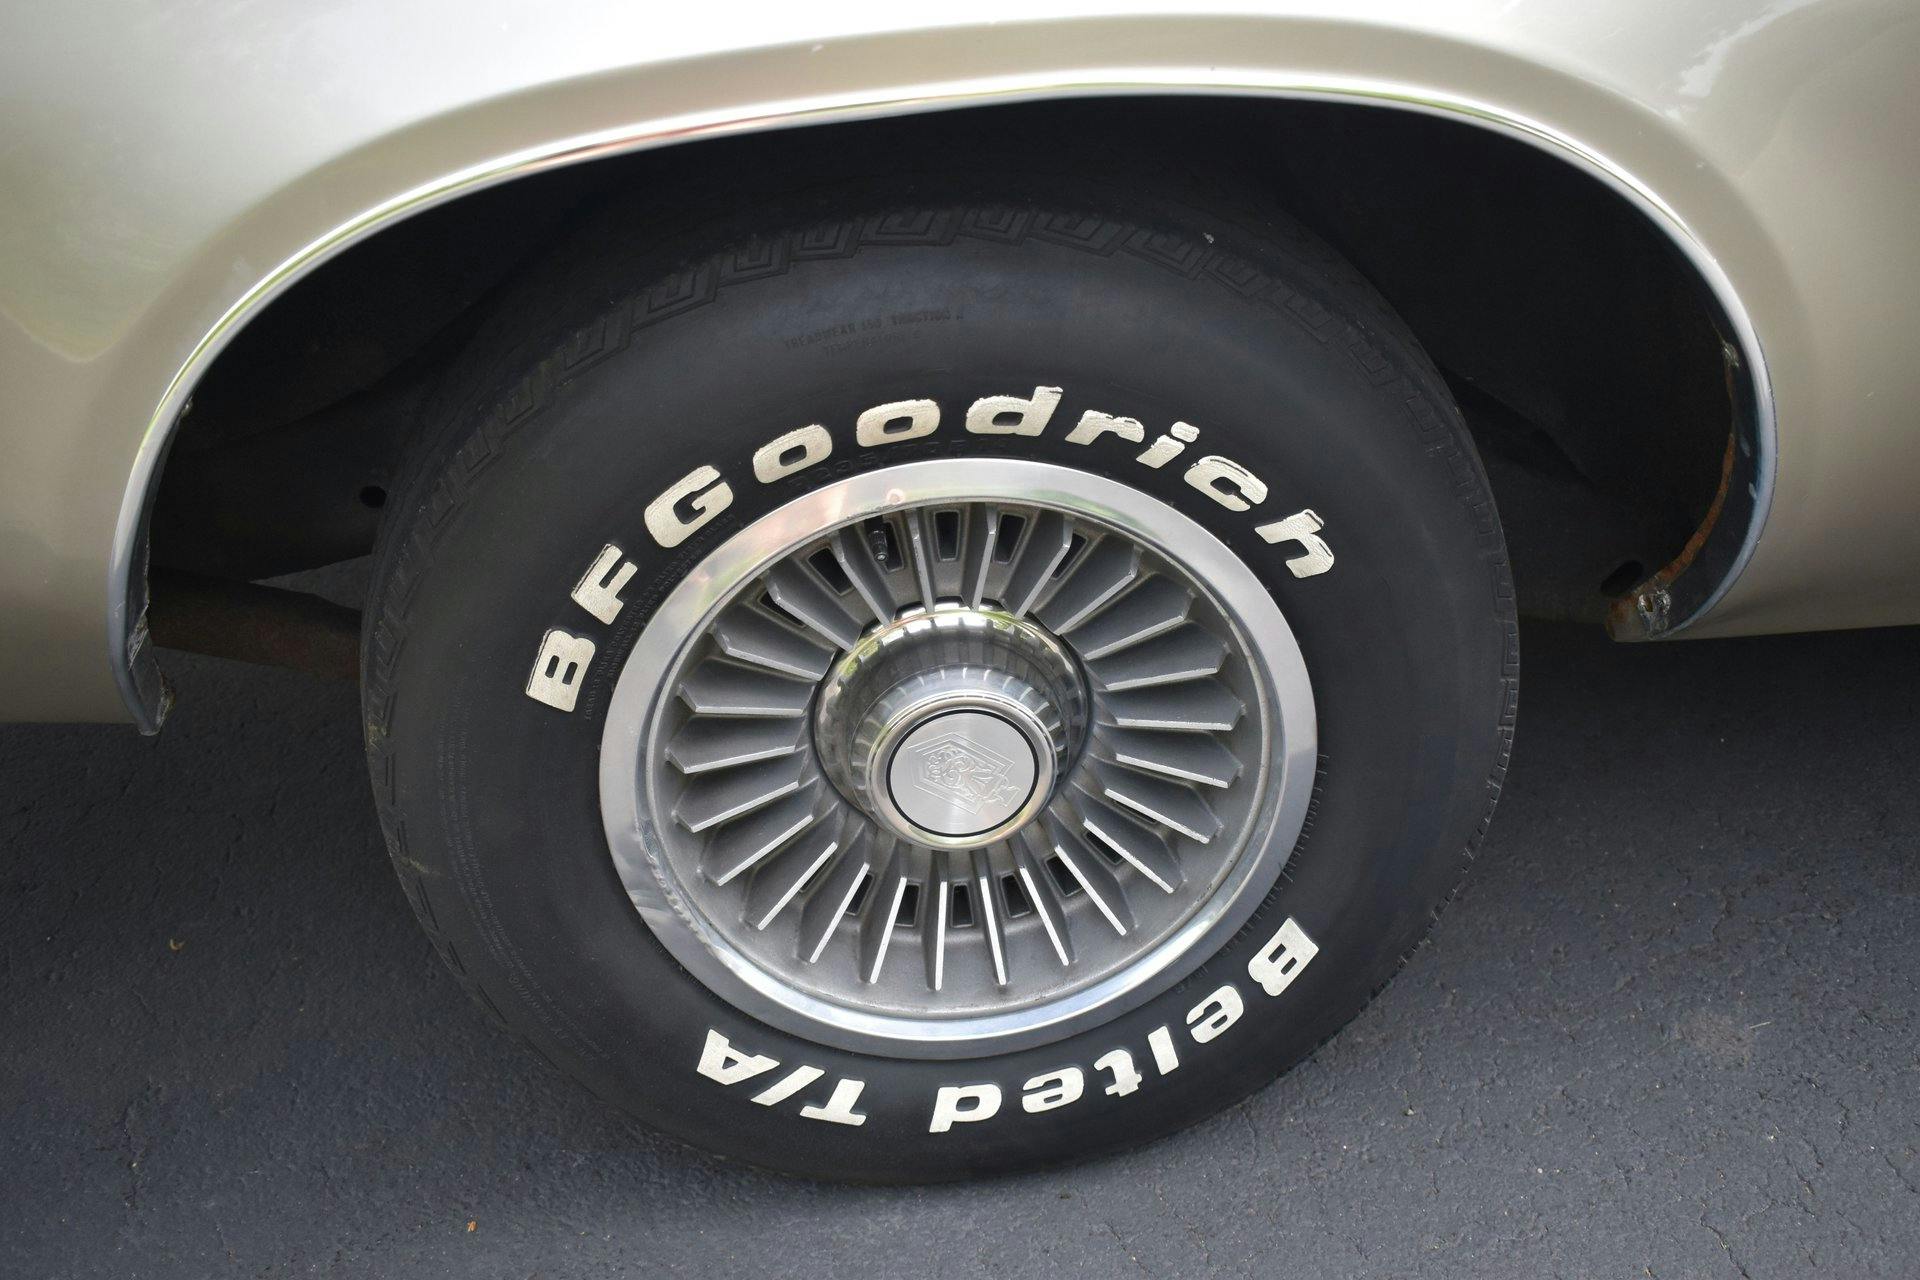 1974 Chevrolet El Camino wheel tire